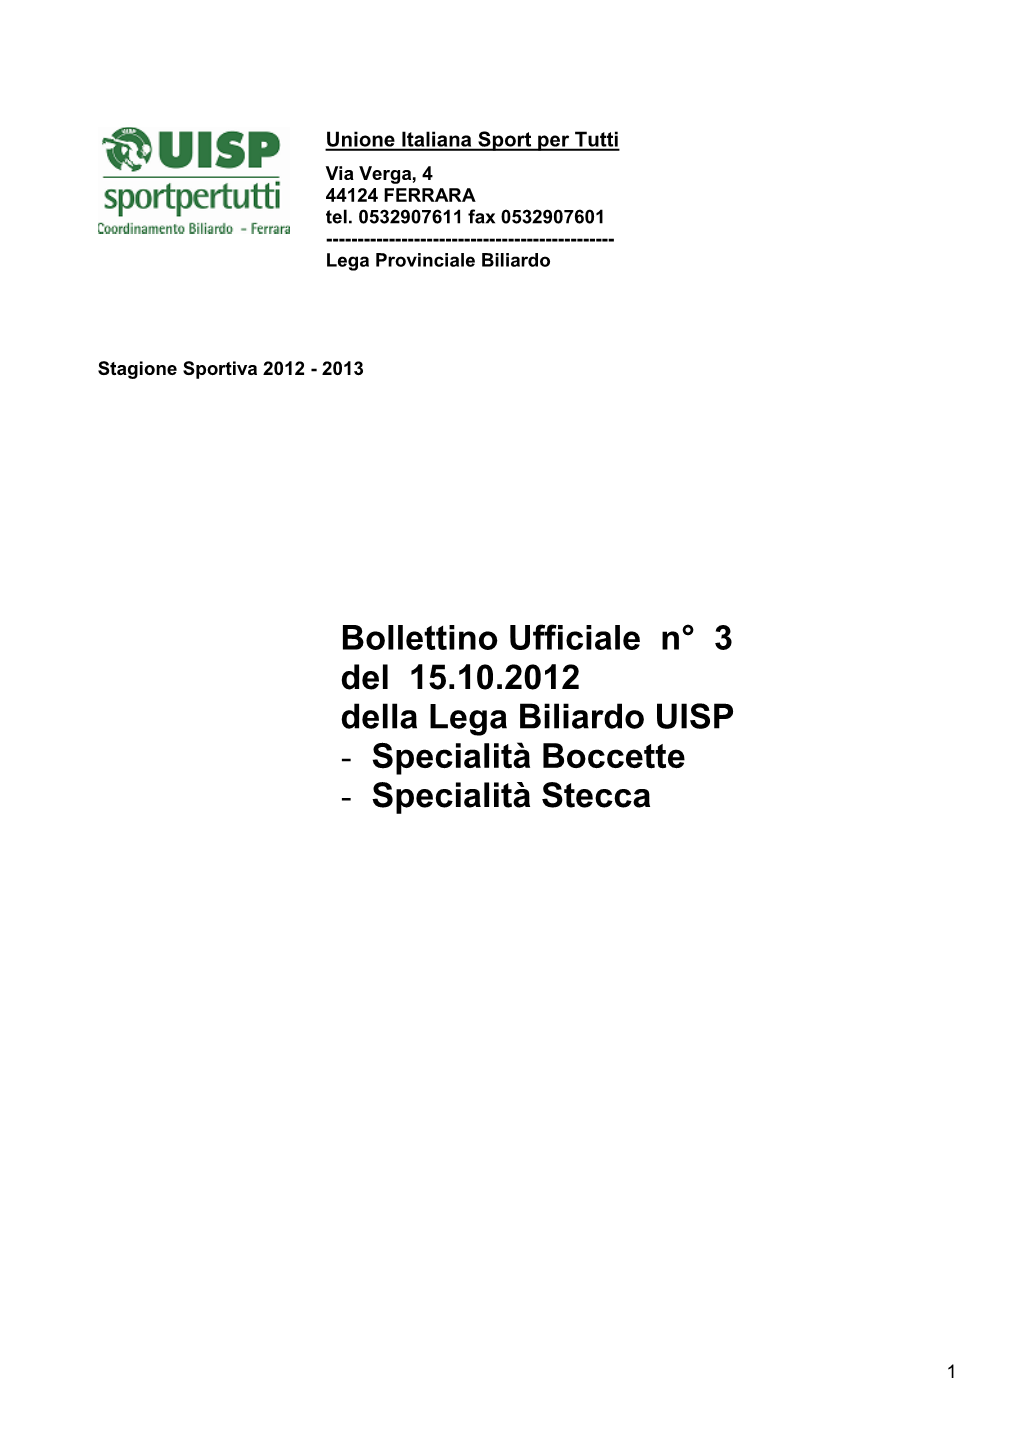 Bollettino Ufficiale N° 3 Del 15.10.2012 Della Lega Biliardo UISP - Specialità Boccette - Specialità Stecca